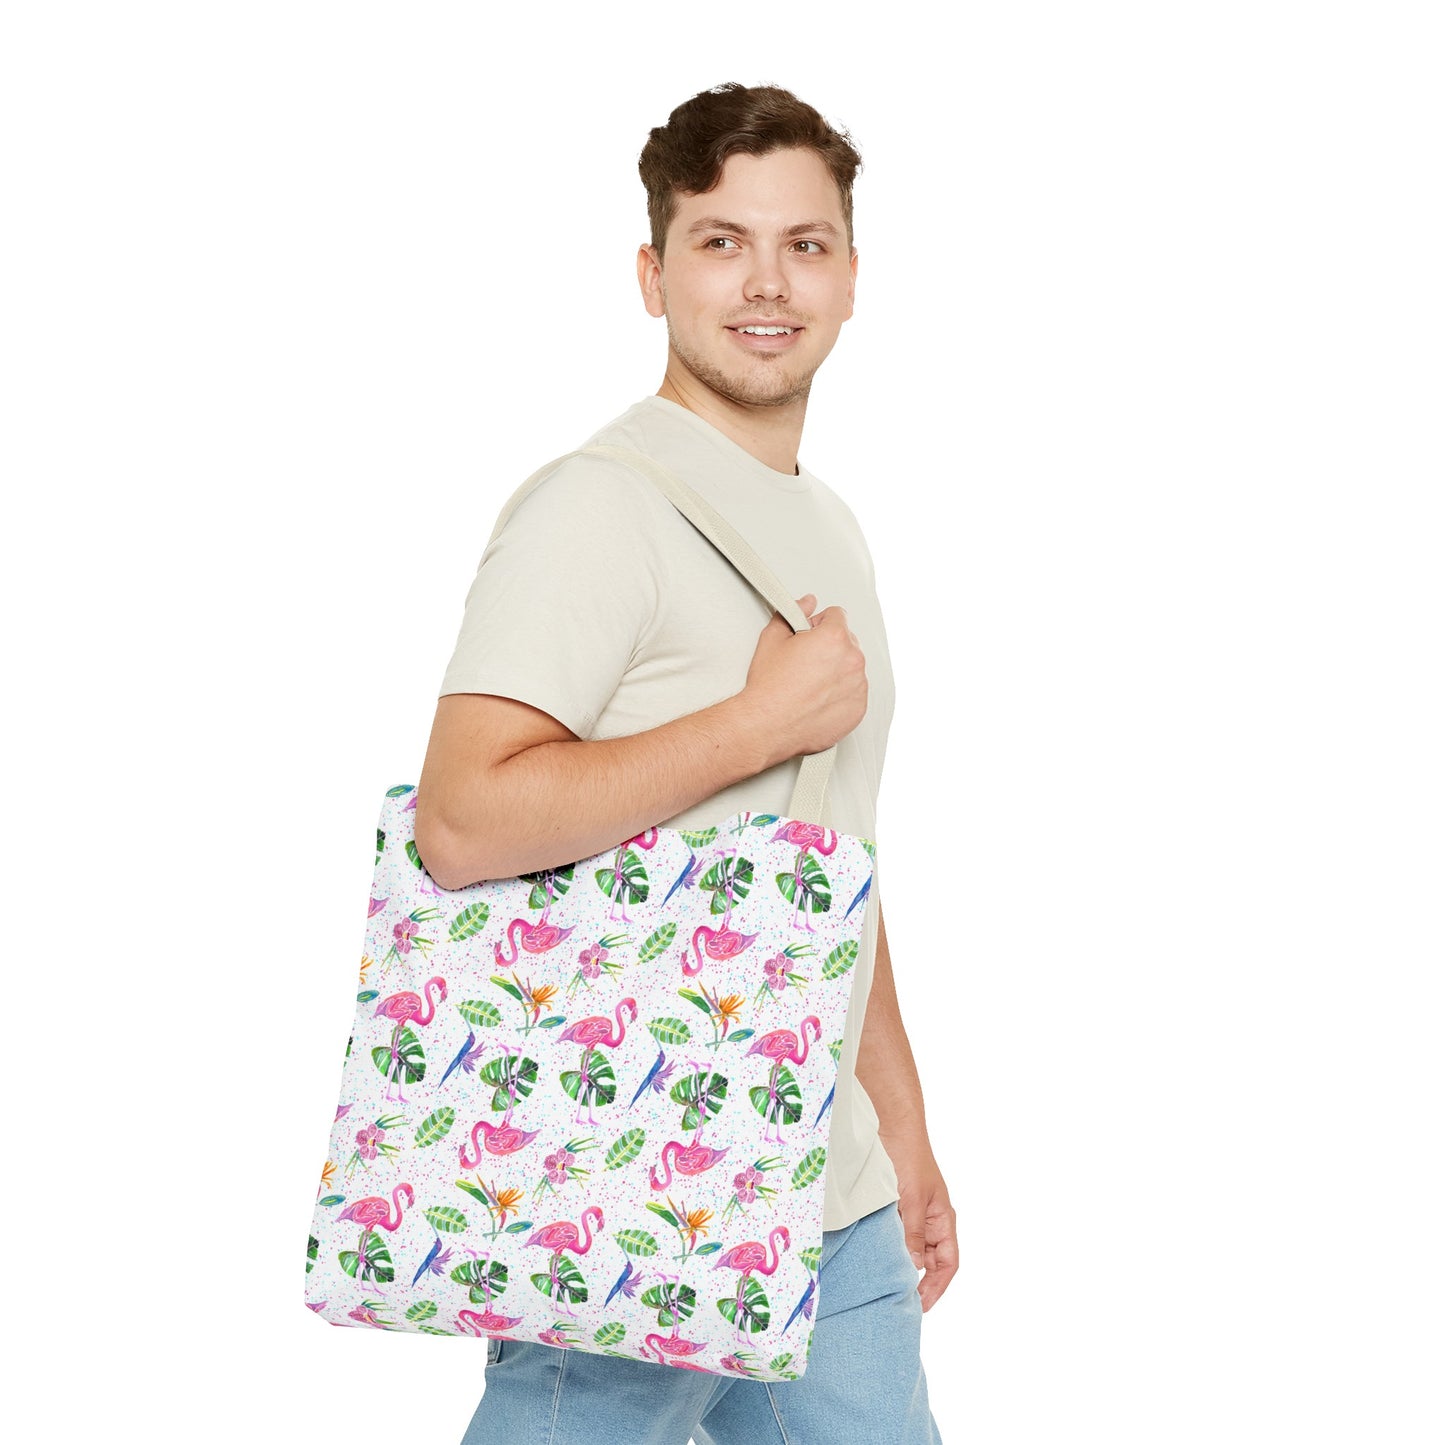 Flamingo Party on White Tote Bag